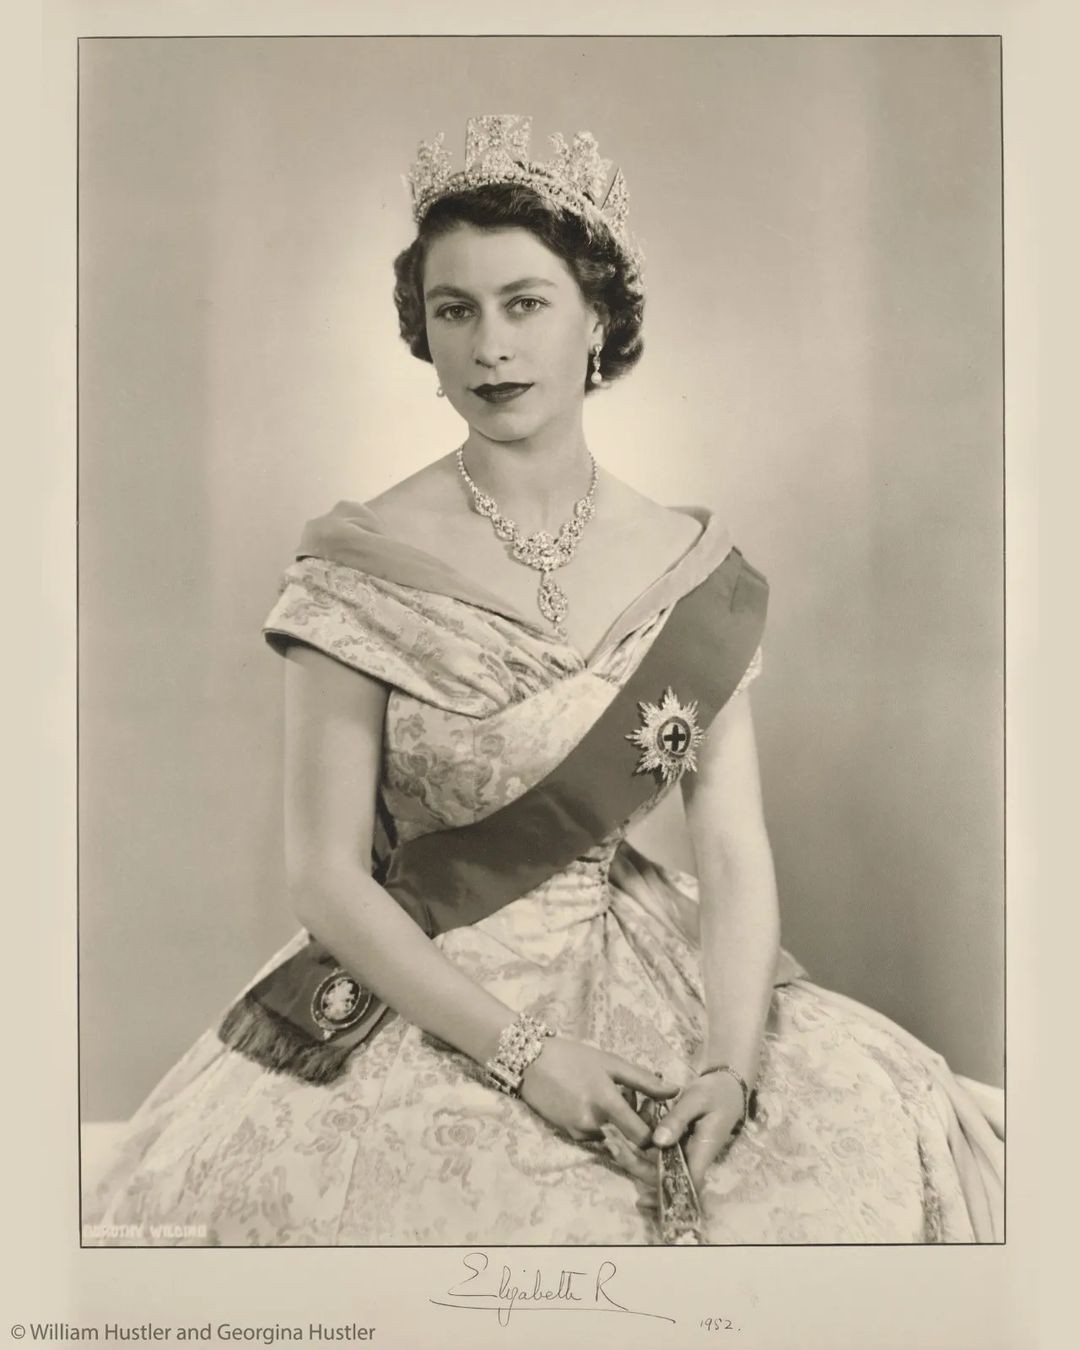 Rainha Elizabeth II em fevereiro de 1952, aos 26 anos de idade (Foto: The Royal Family: William Hustler and Georgina Hustler)